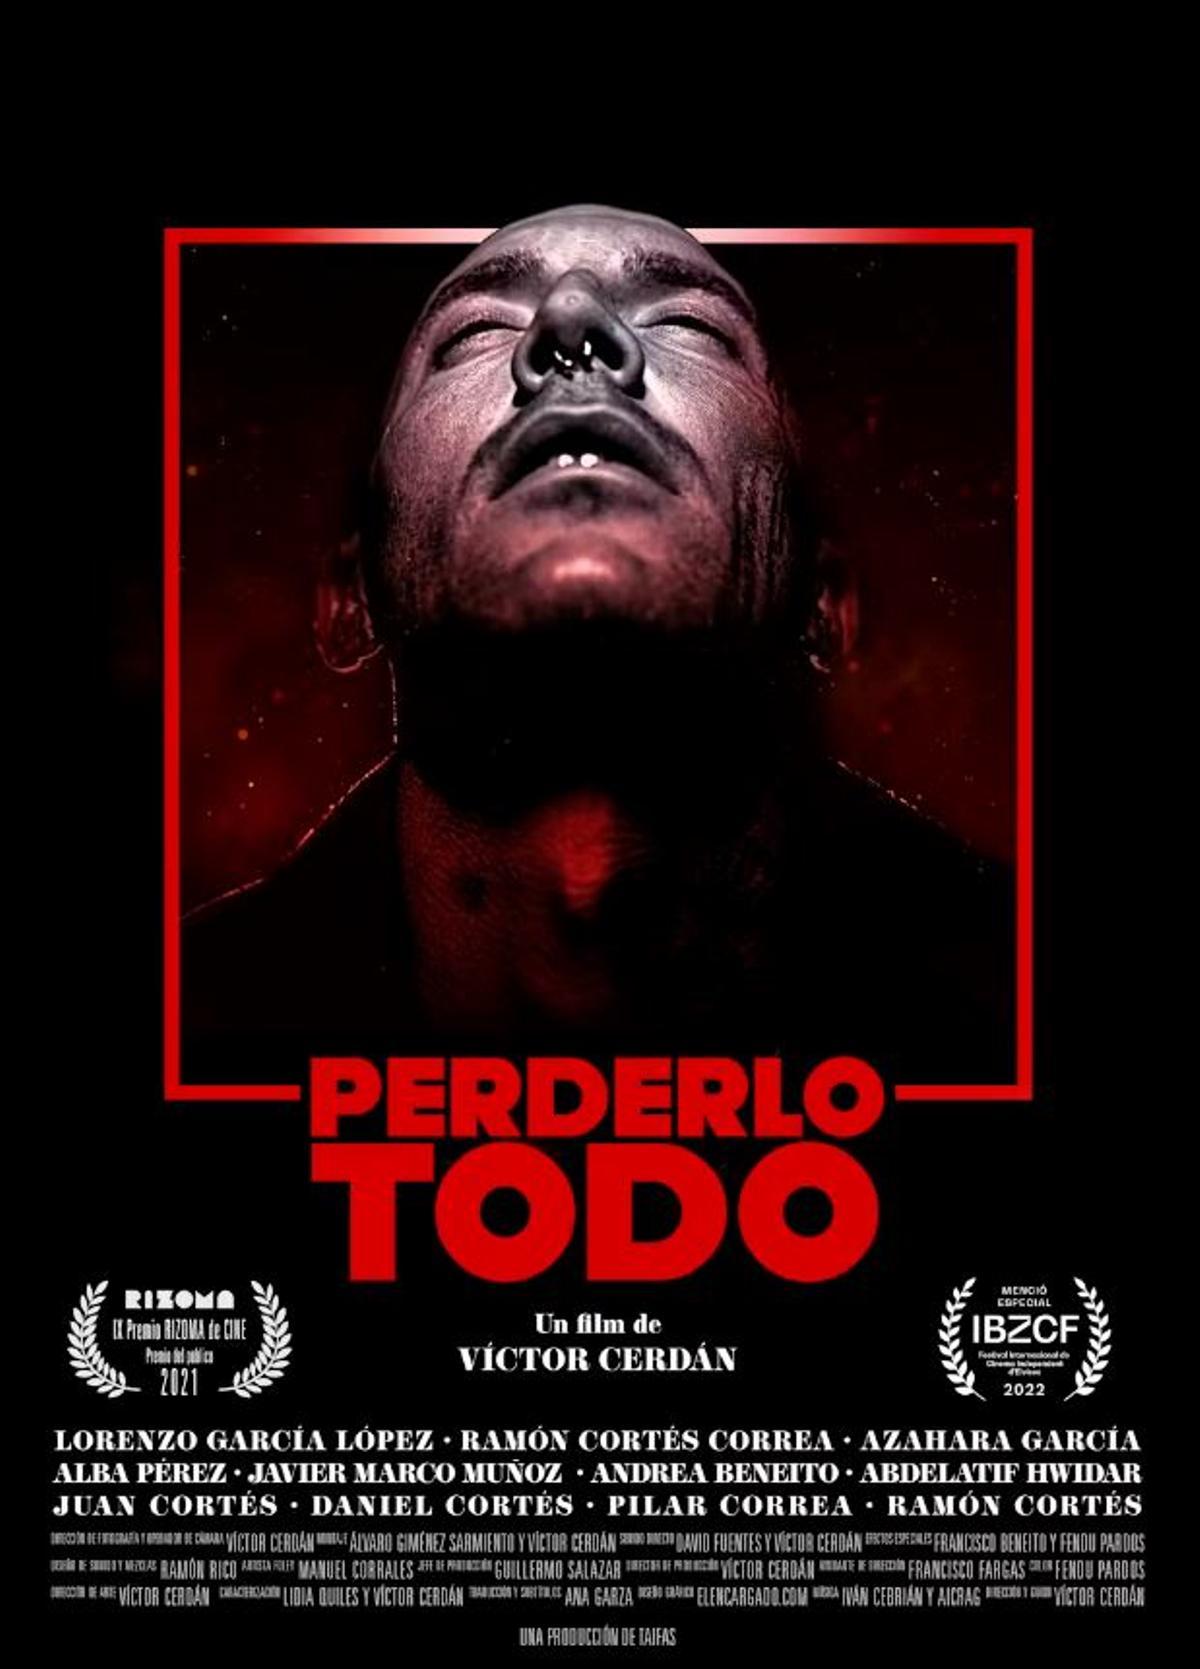 Cartel de la película con que se realizó el experimento, Perderlo todo, dirigida por Víctor Cerdán en 2021.